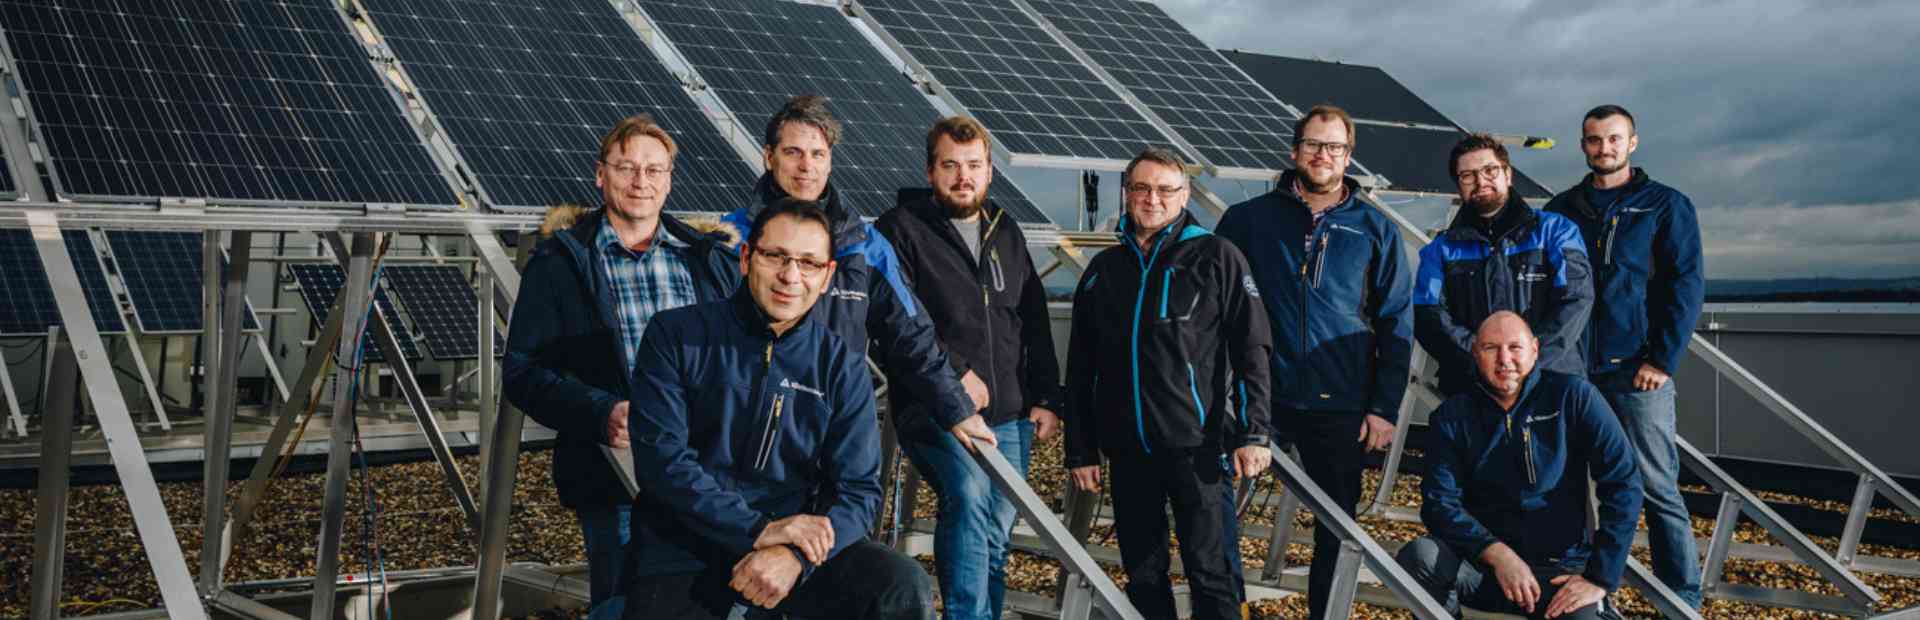 Cursuri sisteme fotovoltaice TÜV Rheinland